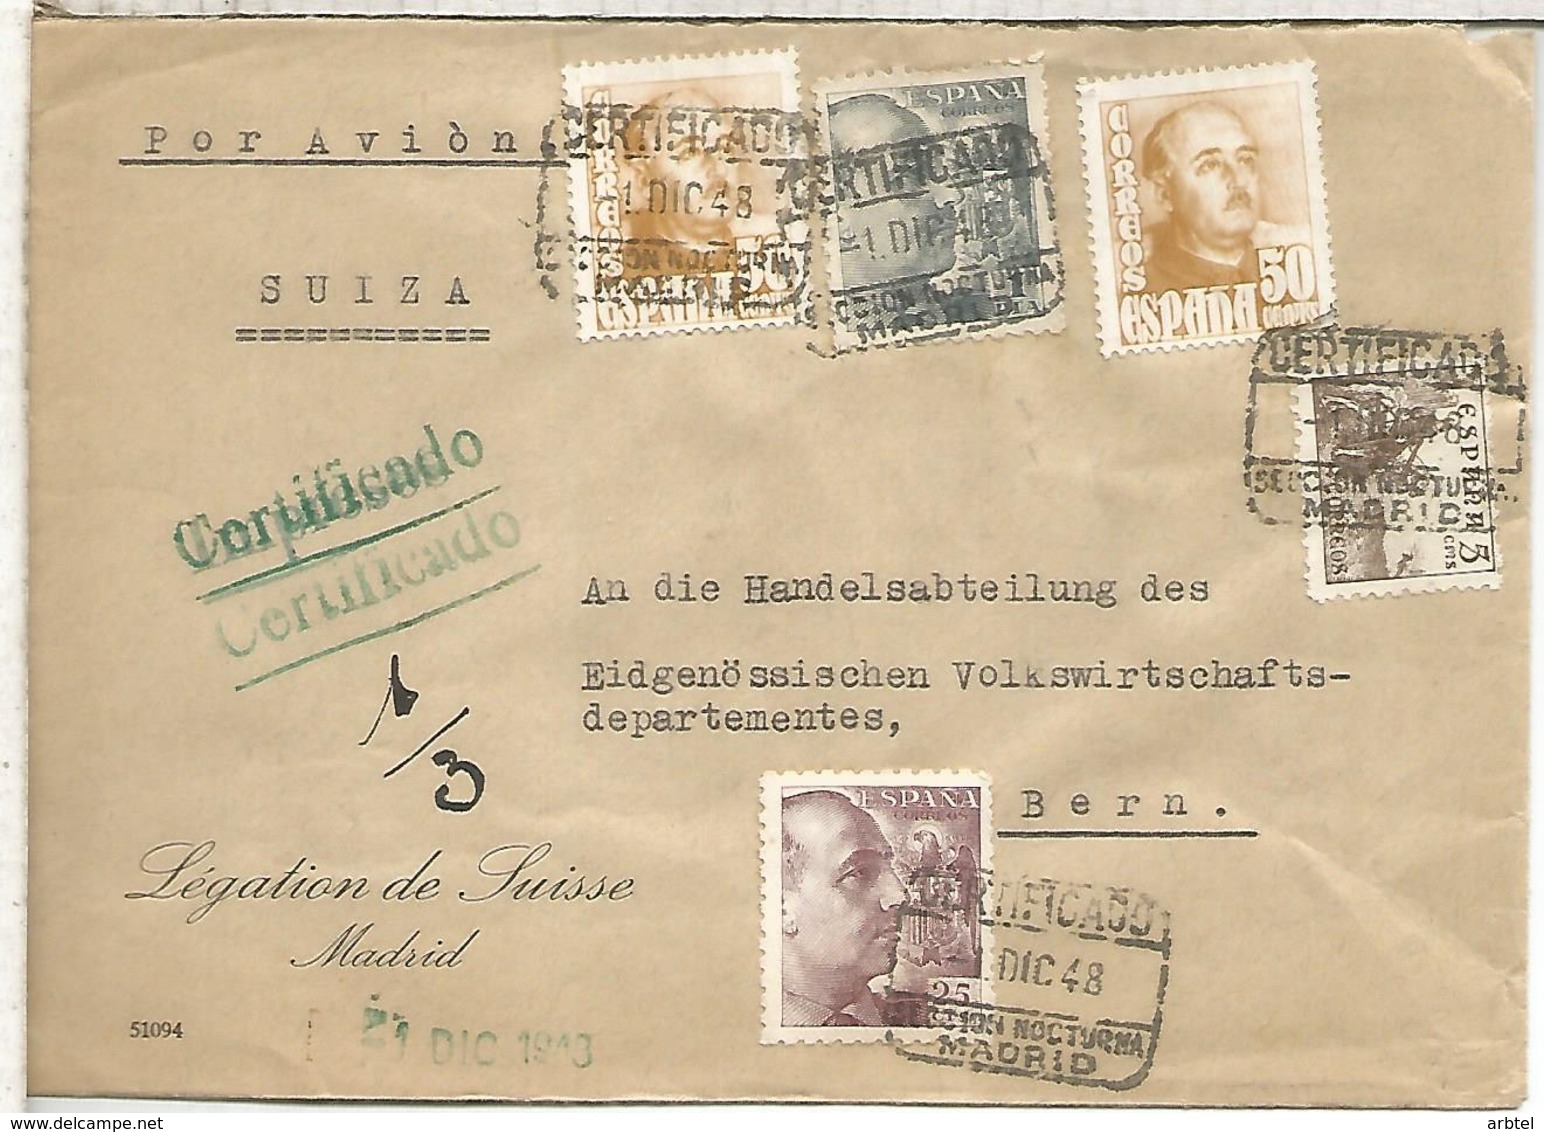 MADRID CC A SUIZA LEGATION DE SUISSE CERTIFICADA MAT SECCION NOCTURNA 1948 SELLOS FRANCO CID - Cartas & Documentos